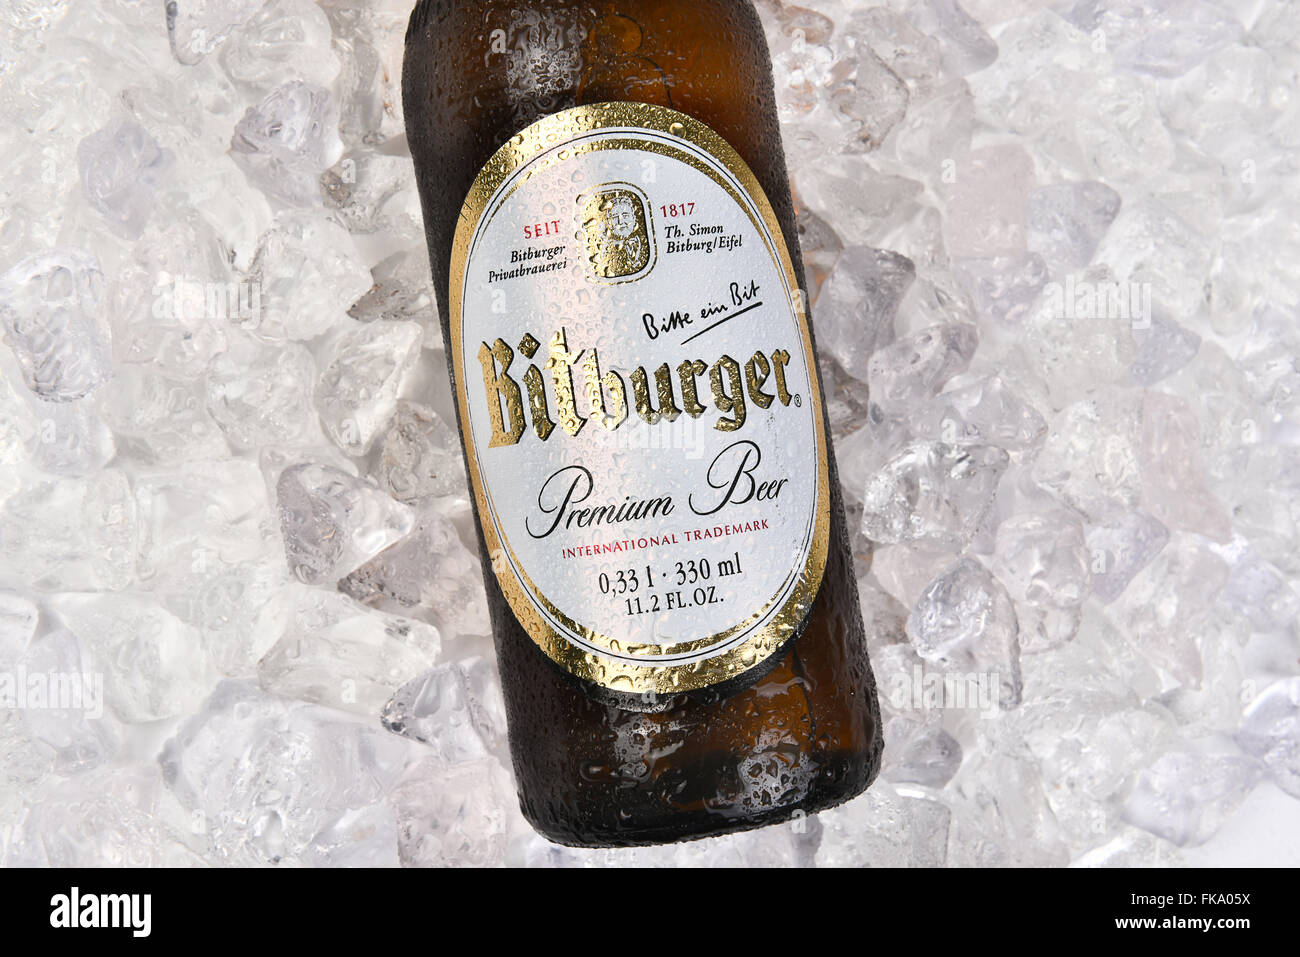 Bitburger Beer Flasche auf einem Bett von Eis Closeup für einen hohen  Winkel Stockfotografie - Alamy